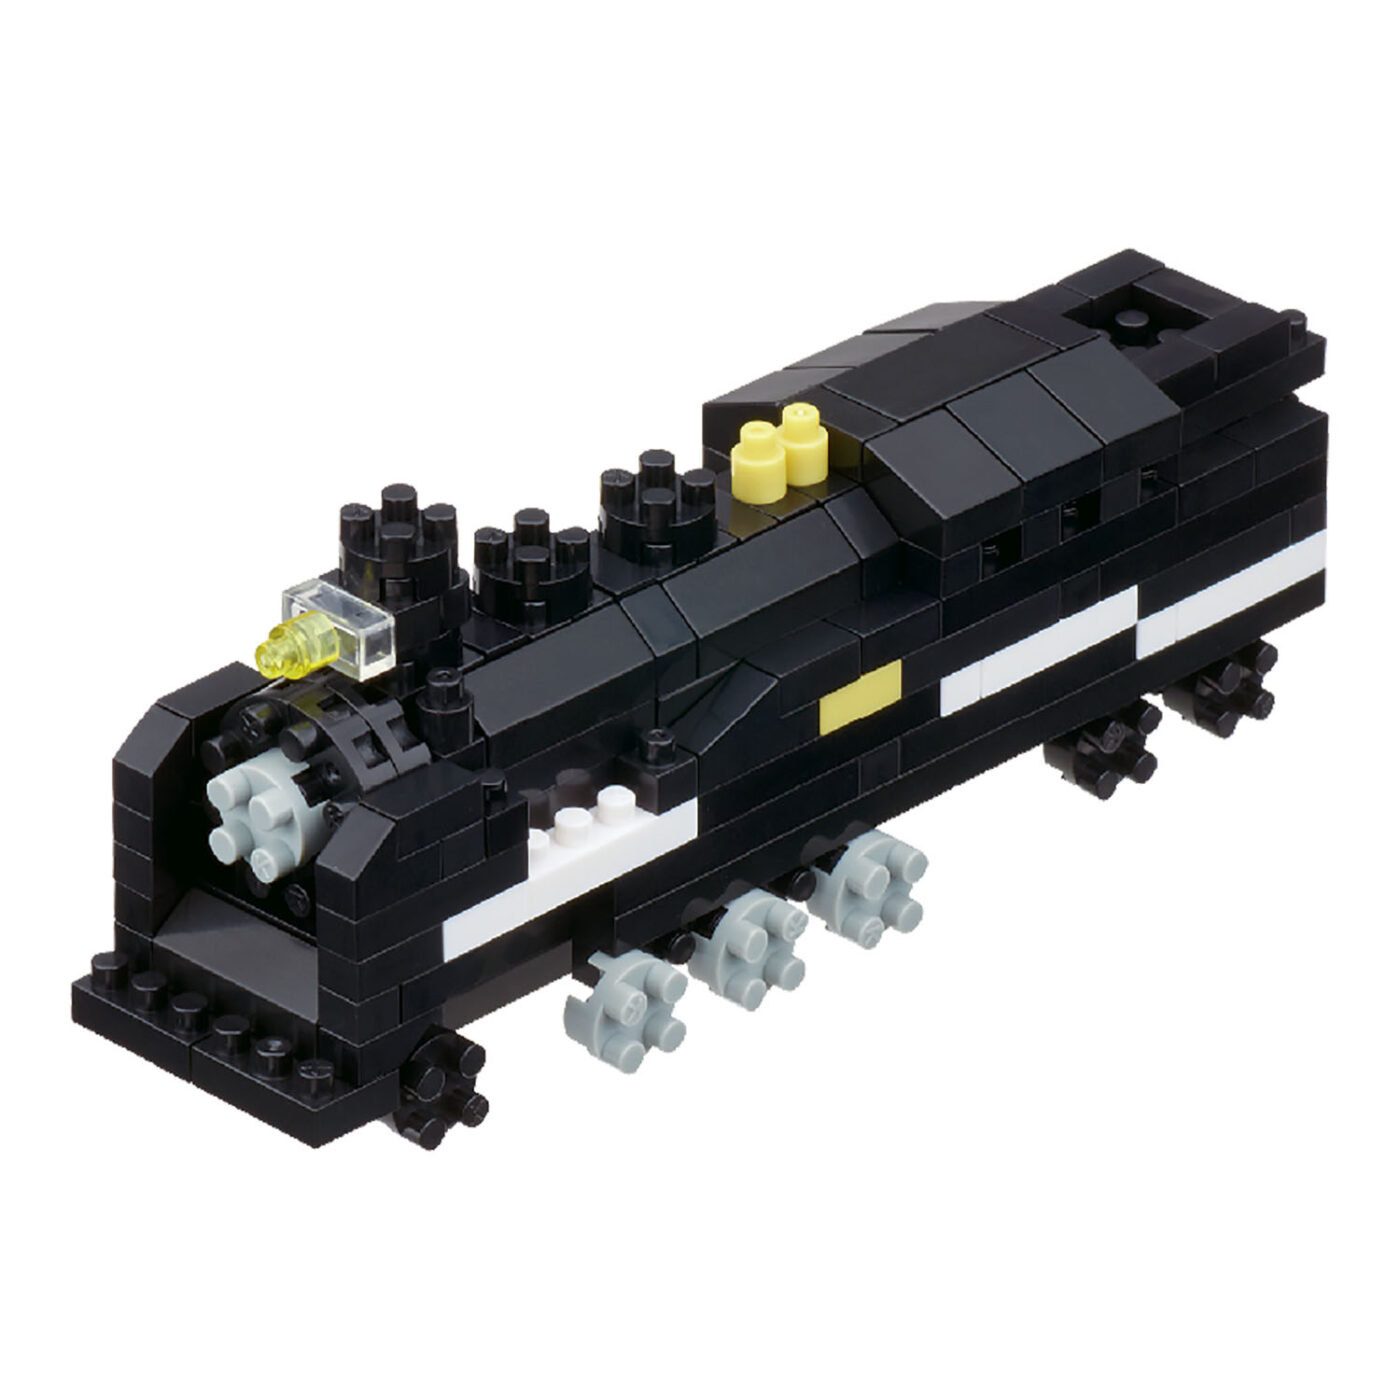 蒸気機関車(タンク式)の商品画像